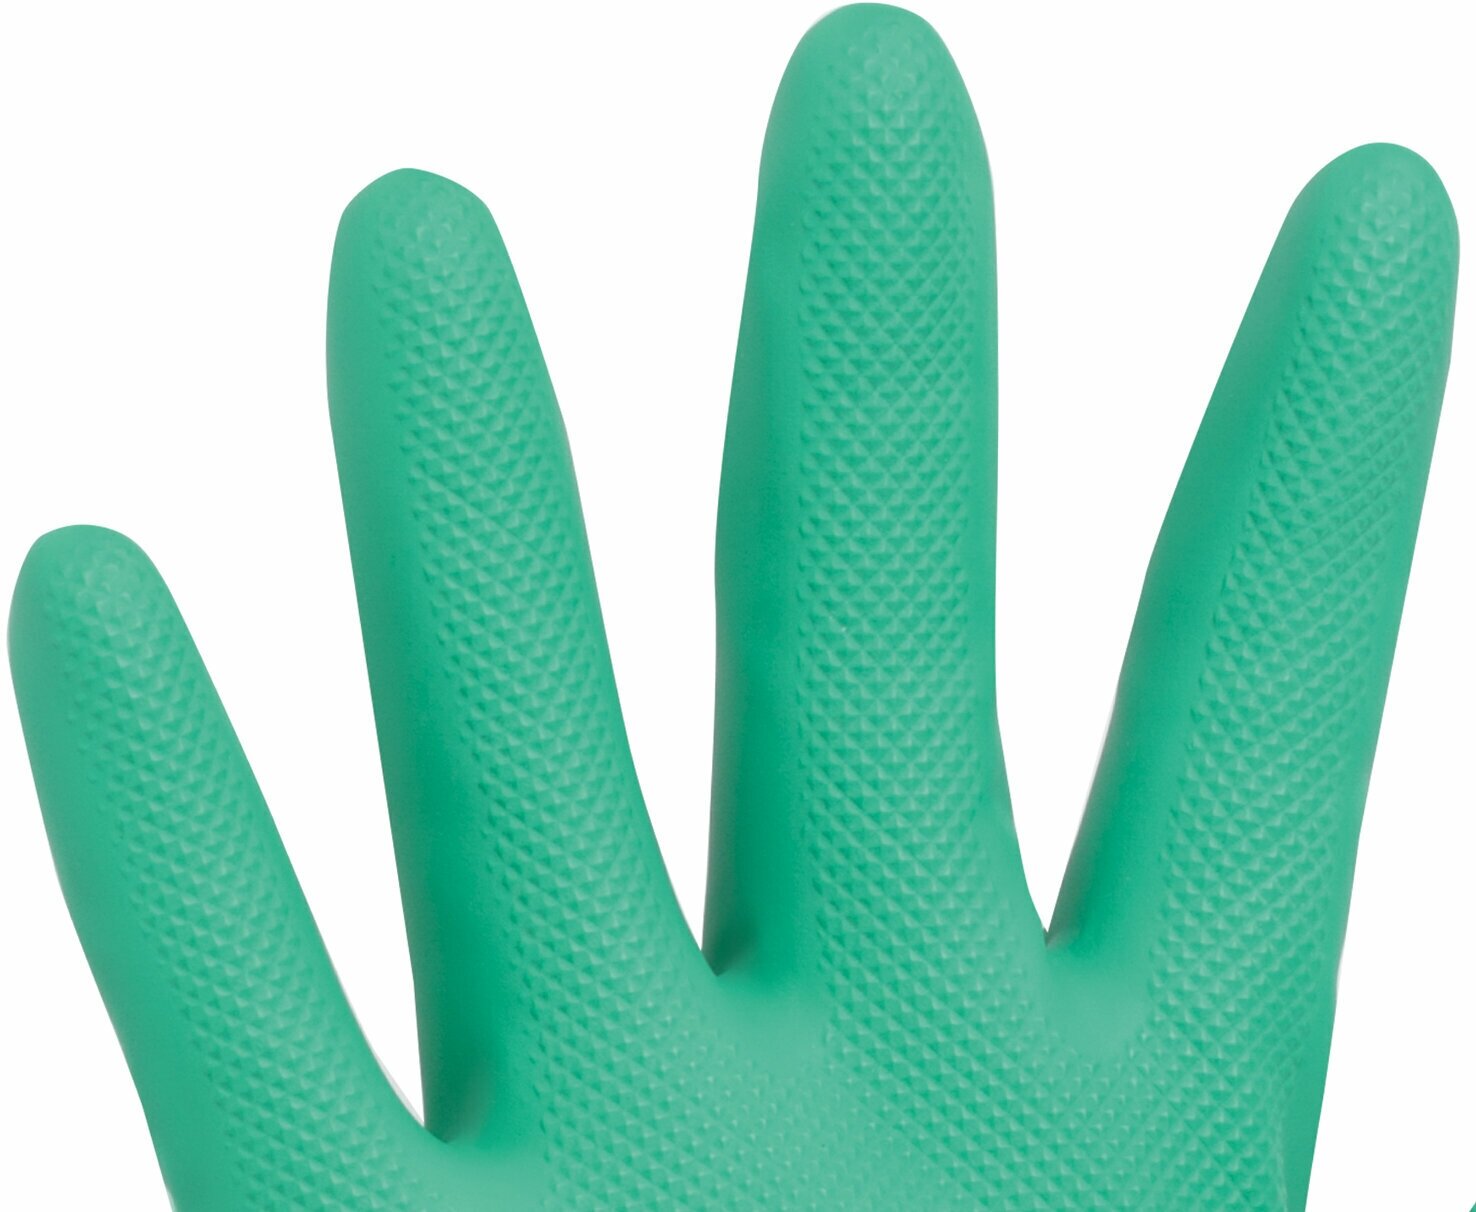 Перчатки нитриловые LAIMA EXPERT нитрил, 70 г/пара, химически устойчивые, гипоаллергенные, размер 8, М (средний), 605001